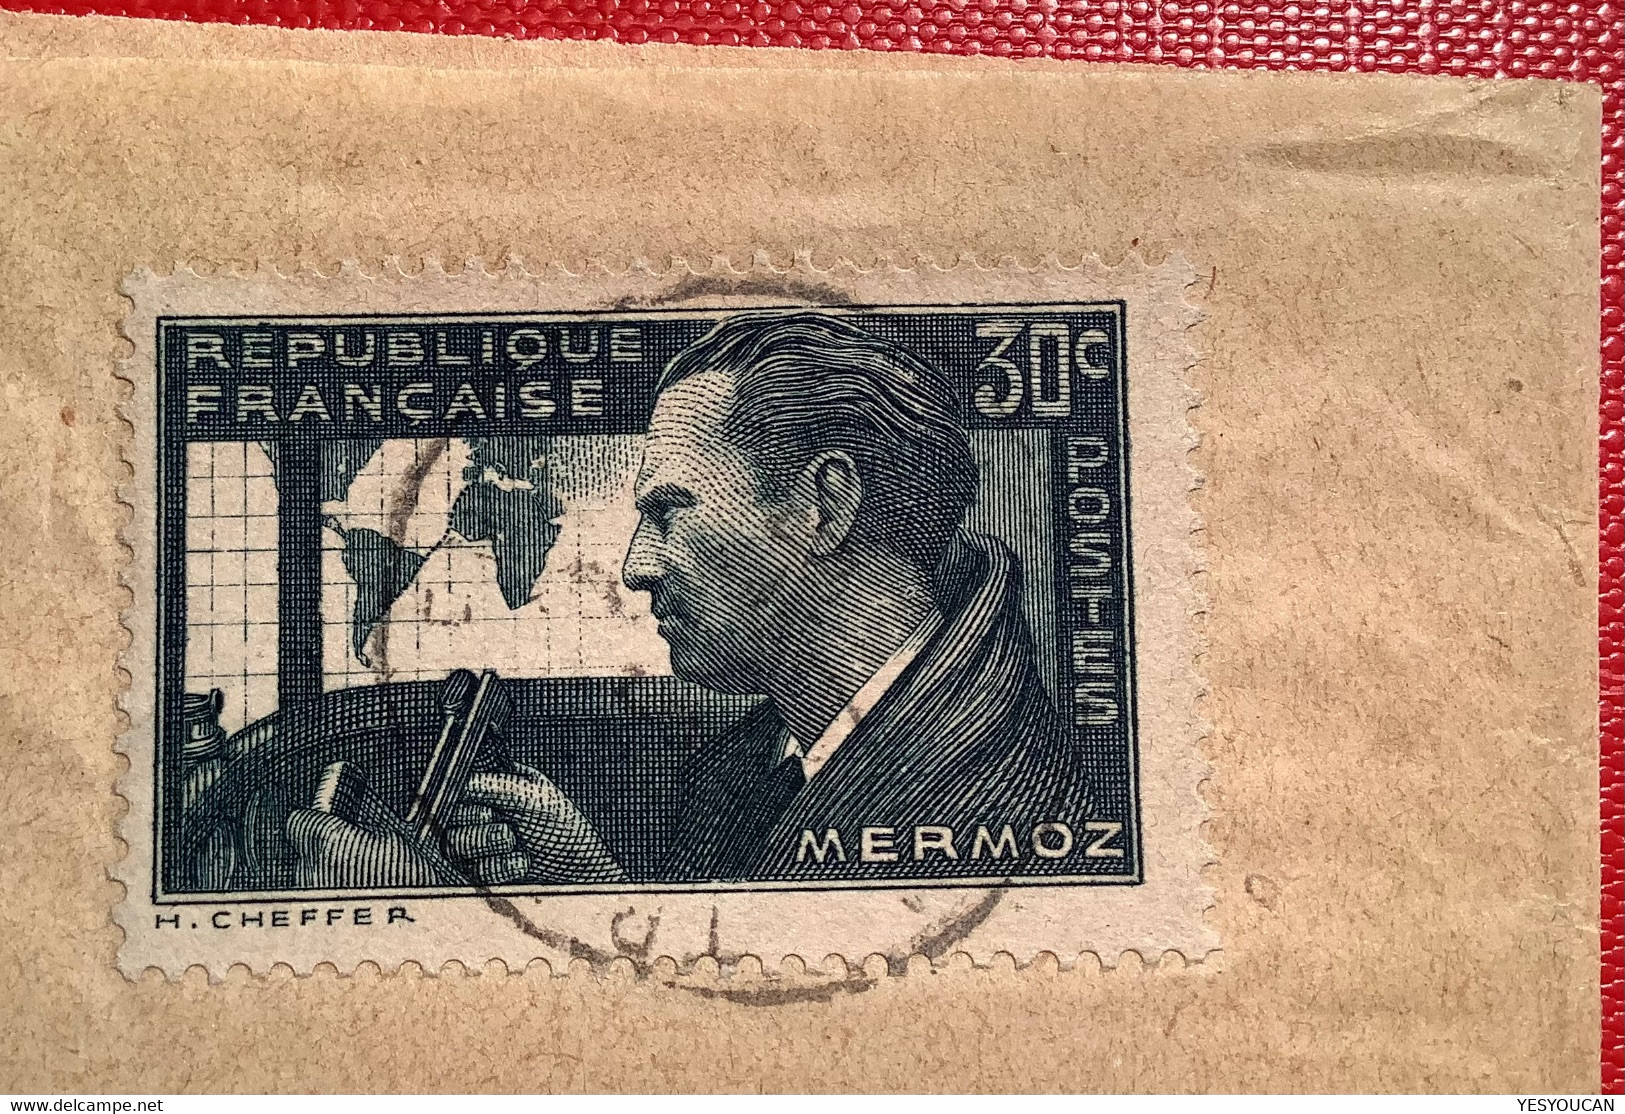 #337 30c Mermoz UTILISATION RARE Sur Bande Journal TRANS EN PROVENCE VAR 5.9.1937>Neuchatel Suisse (France Lettre - Briefe U. Dokumente